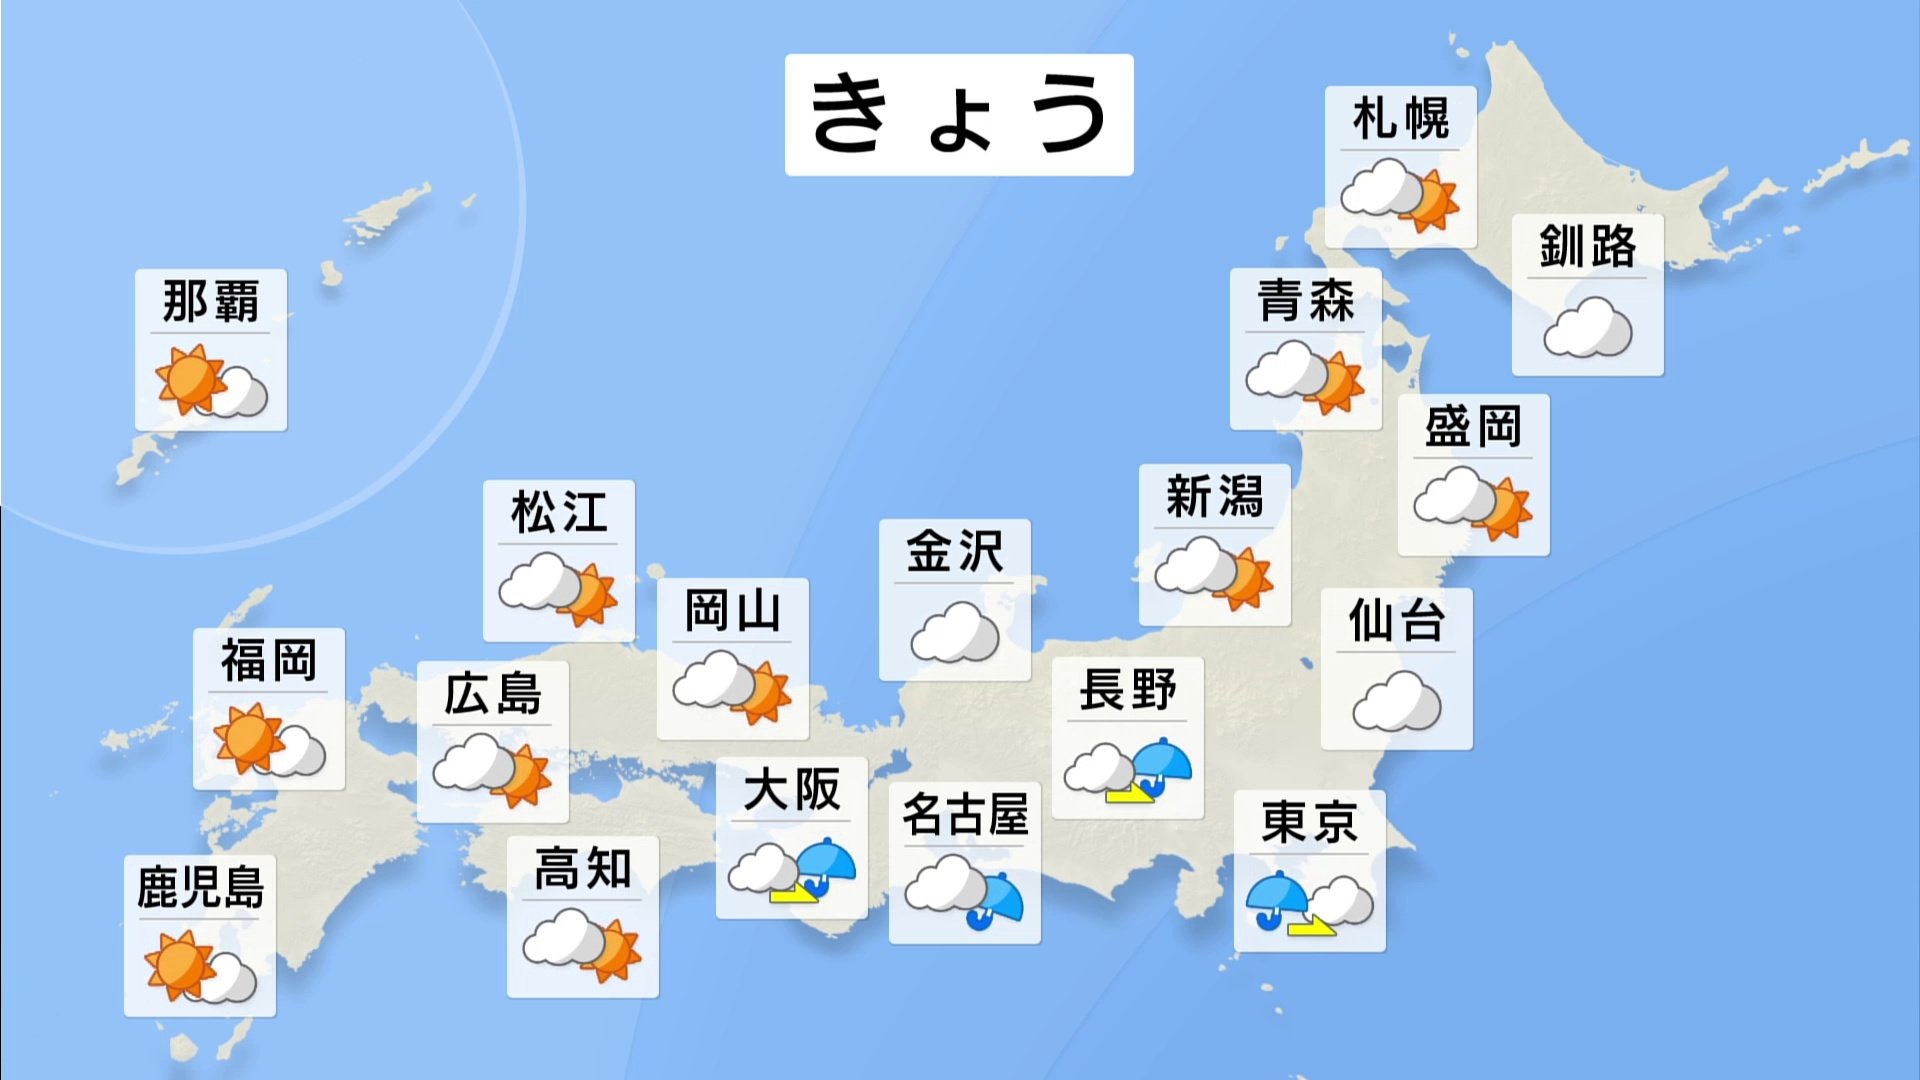 【7月26日 朝 気象情報】これからの天気